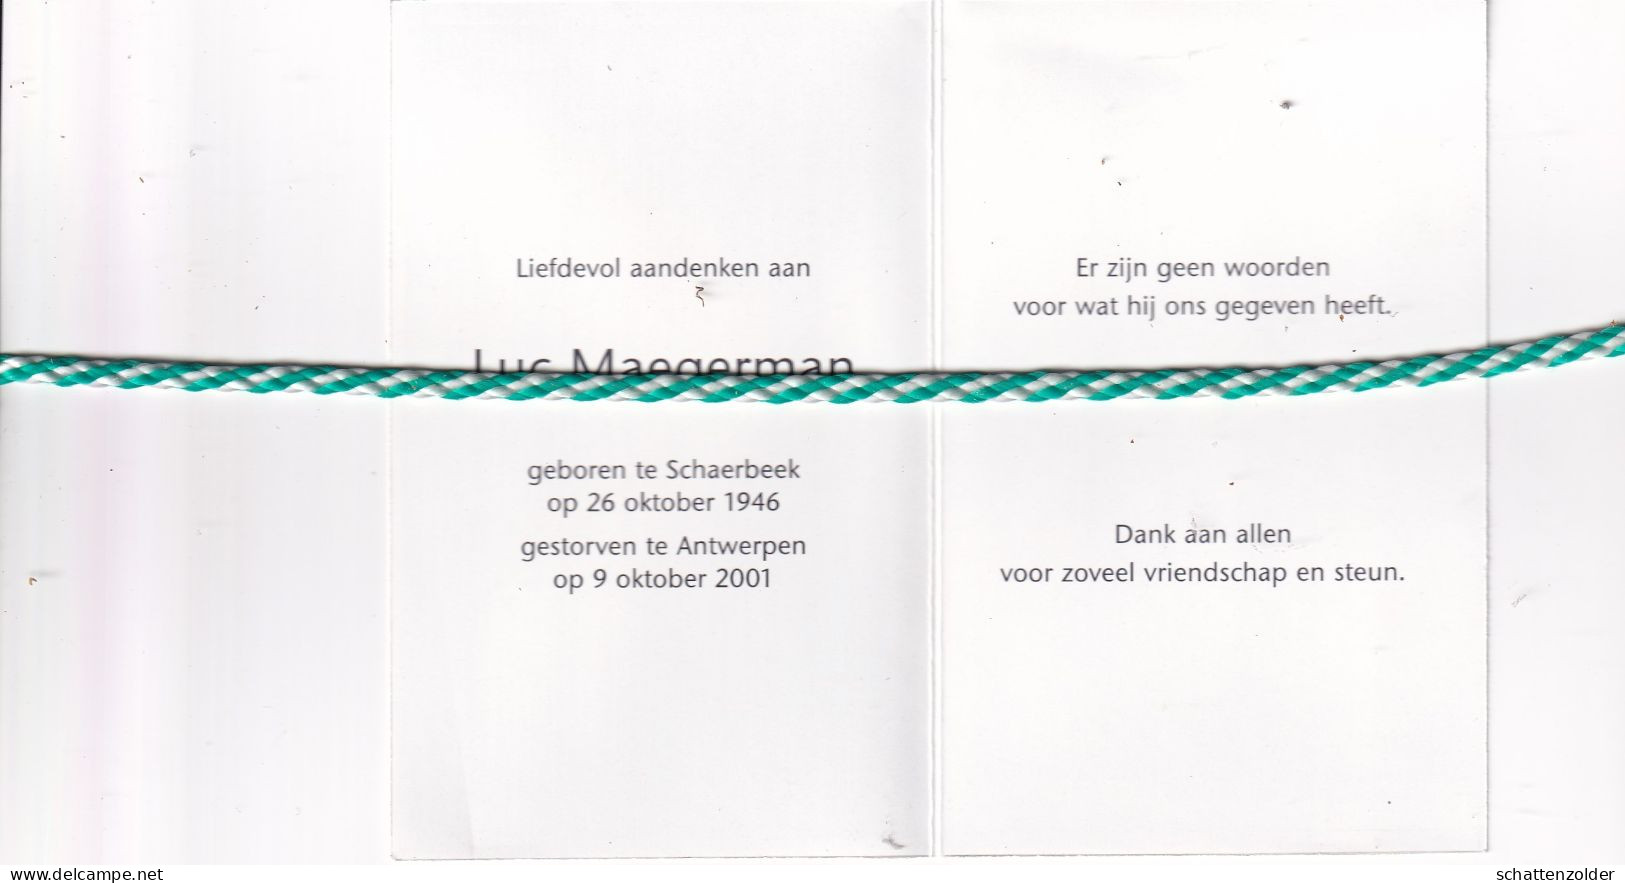 Luc Maegerman, Schaarbeek 1946, Antwerpen 2001. Foto - Obituary Notices